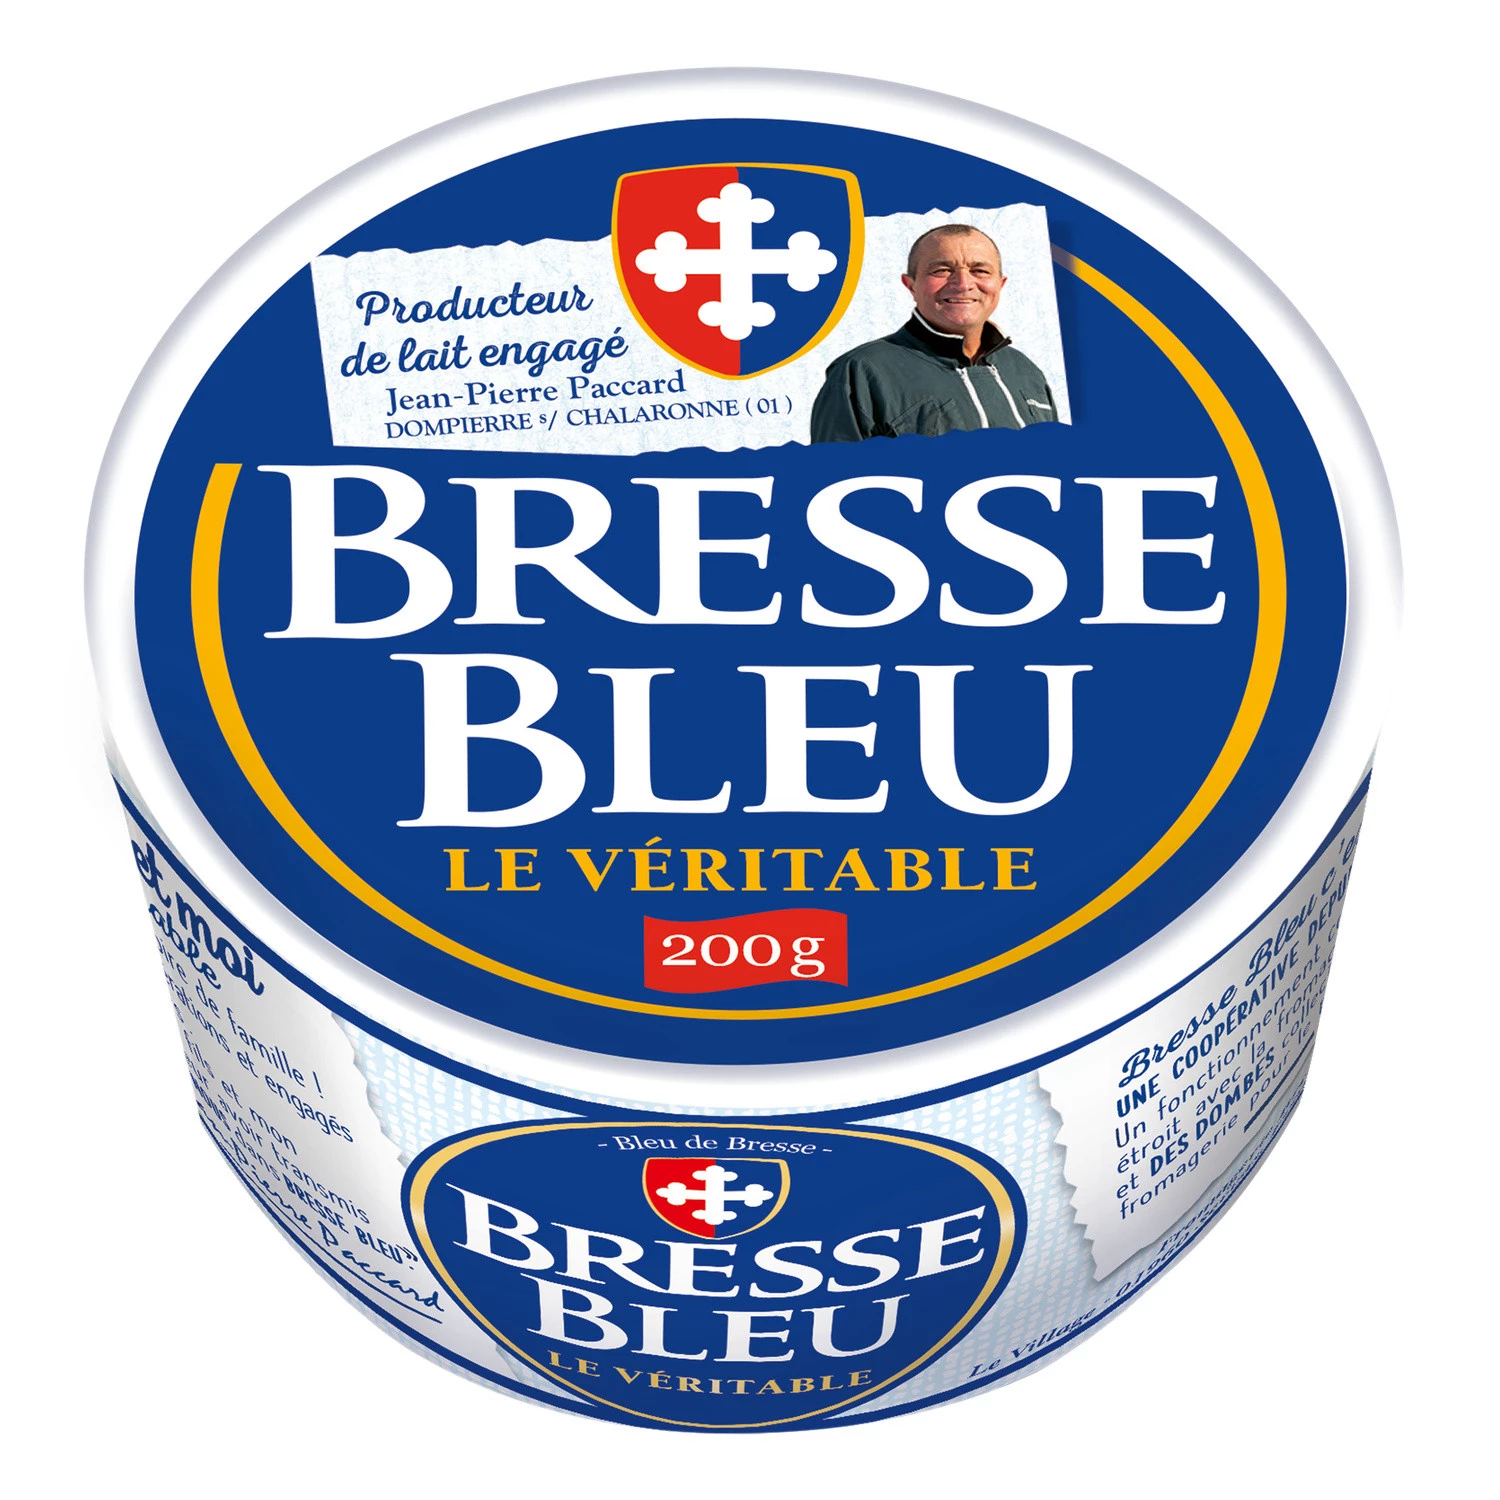 Bresse Bleu 200g